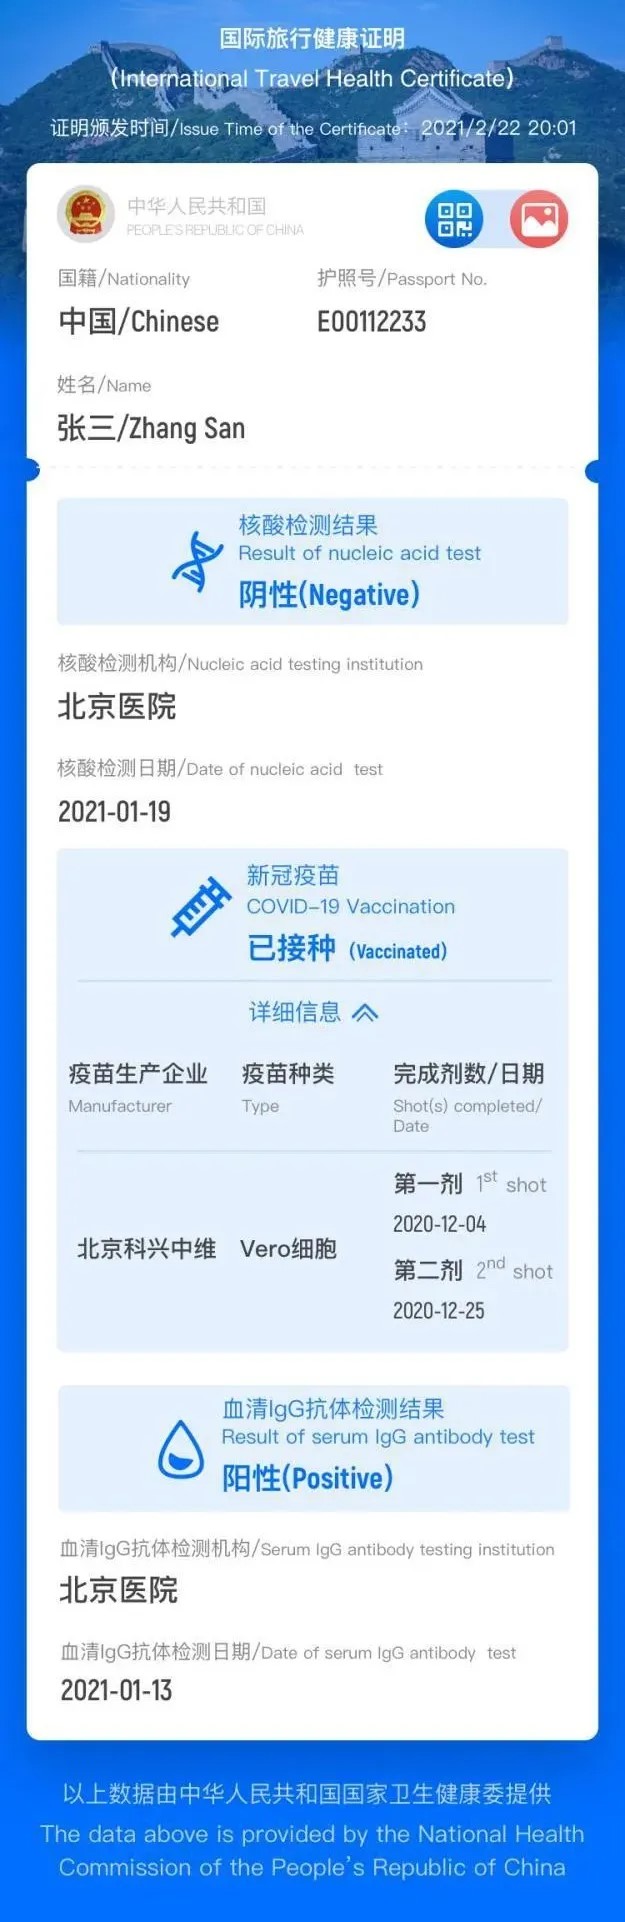 中国版“国际旅行健康证明”微信小程序已正式上线